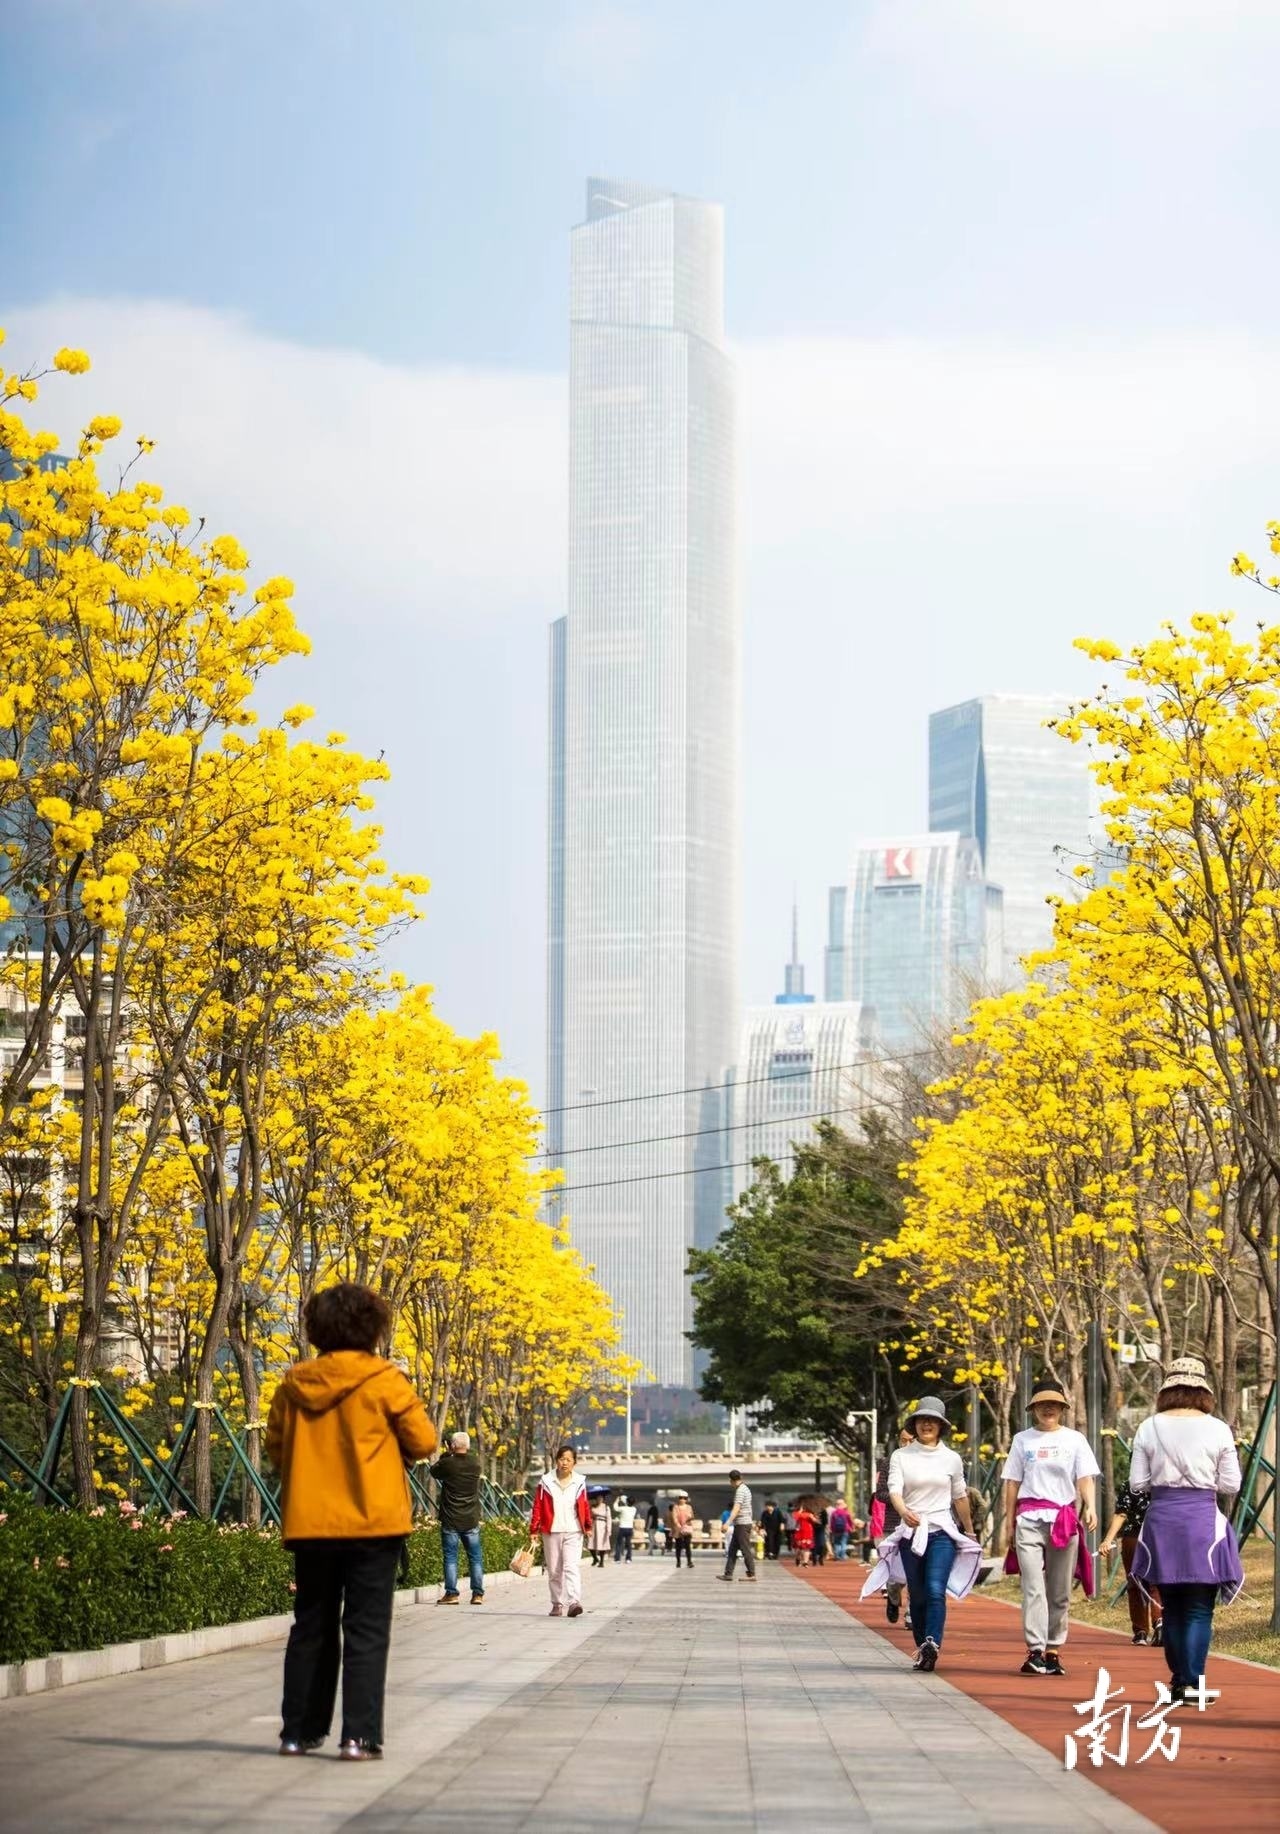 3月11日,广州海珠区磨碟沙公园内,成排的黄花风铃木应季而开,从空中